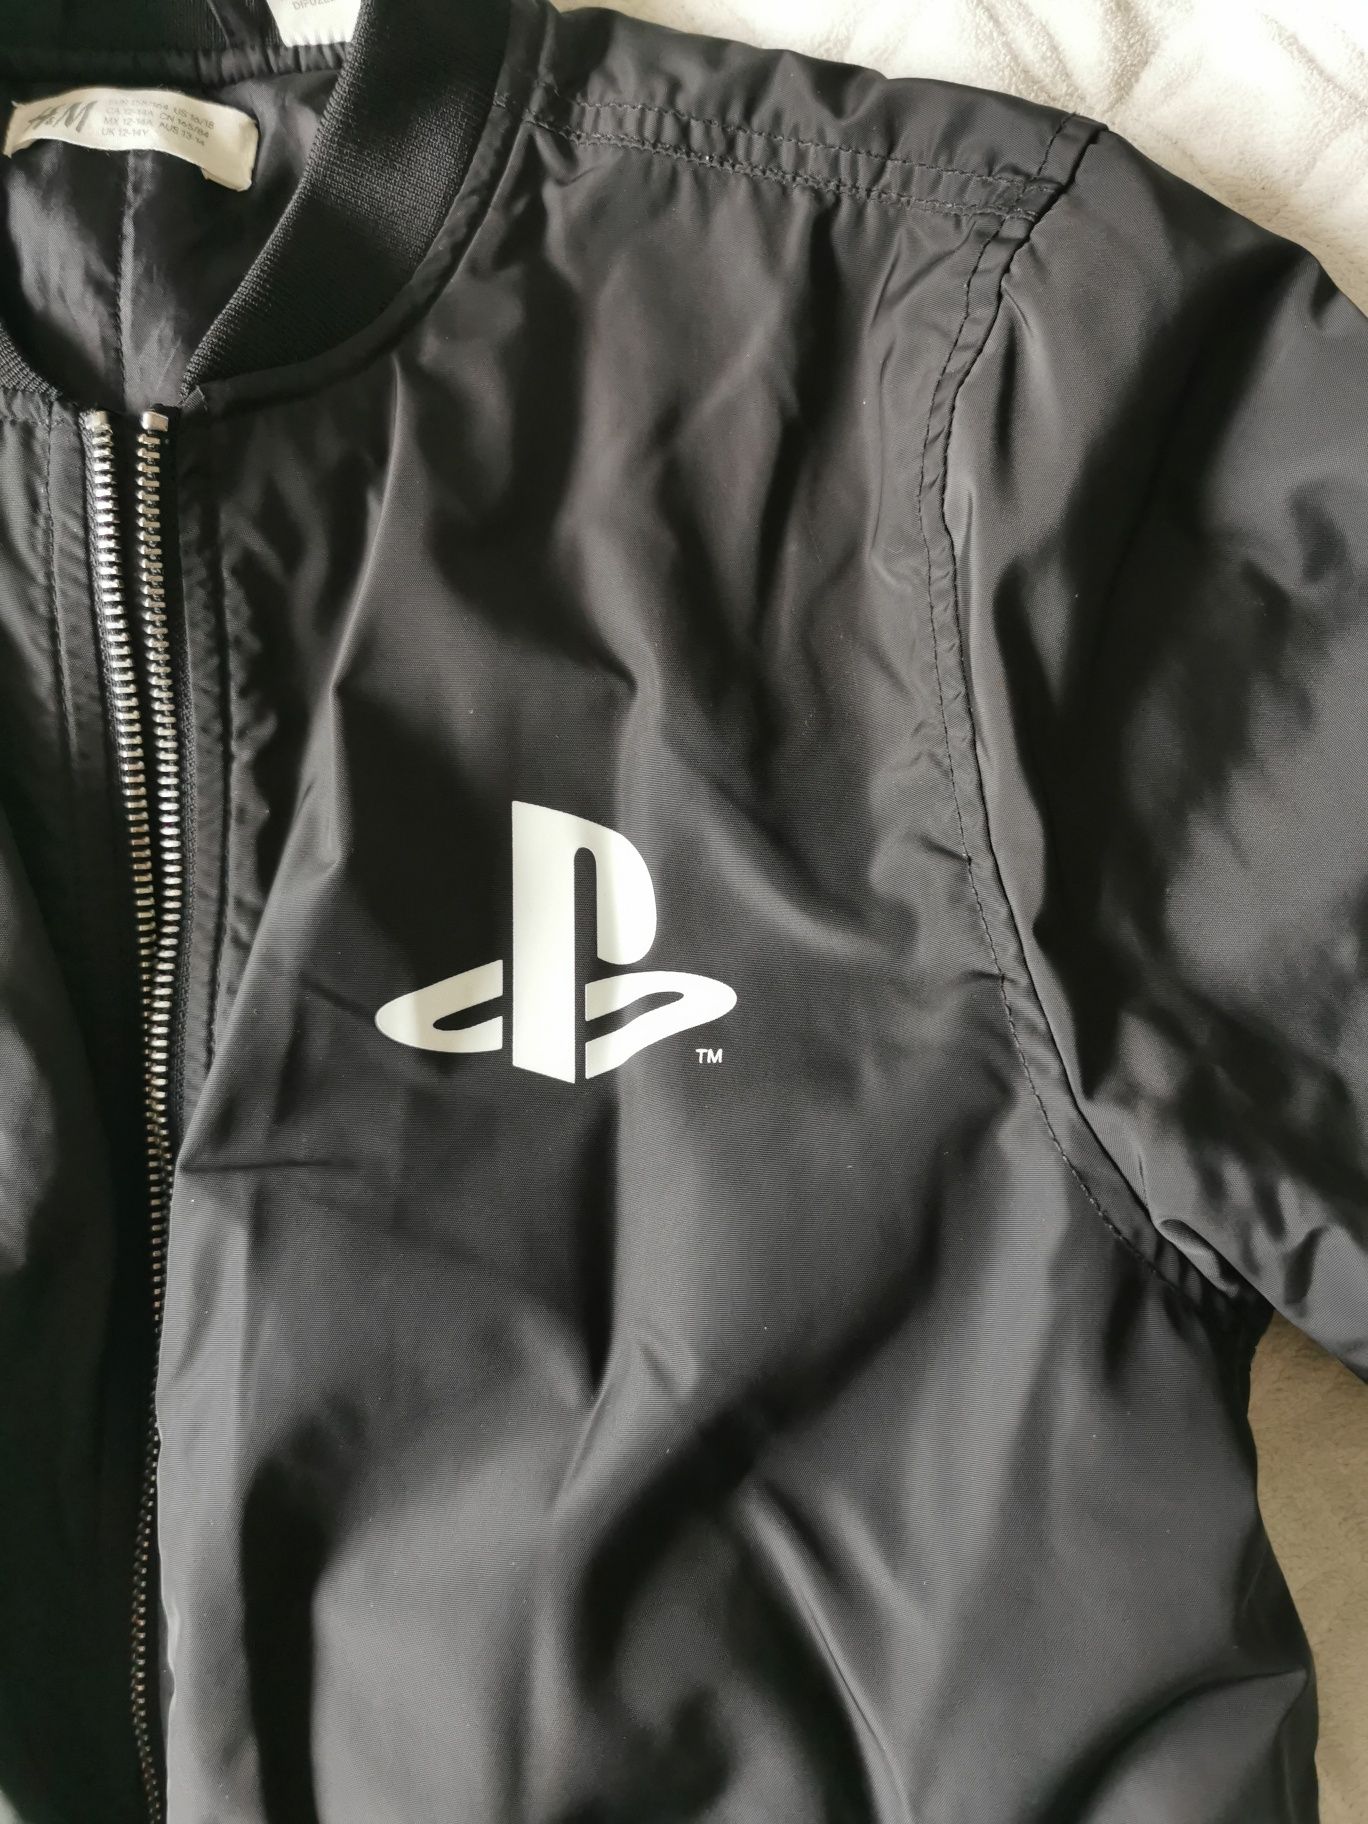 H&M kurtka Ps4 dla fanów konsoli gier i Sony rozmiar 158/164